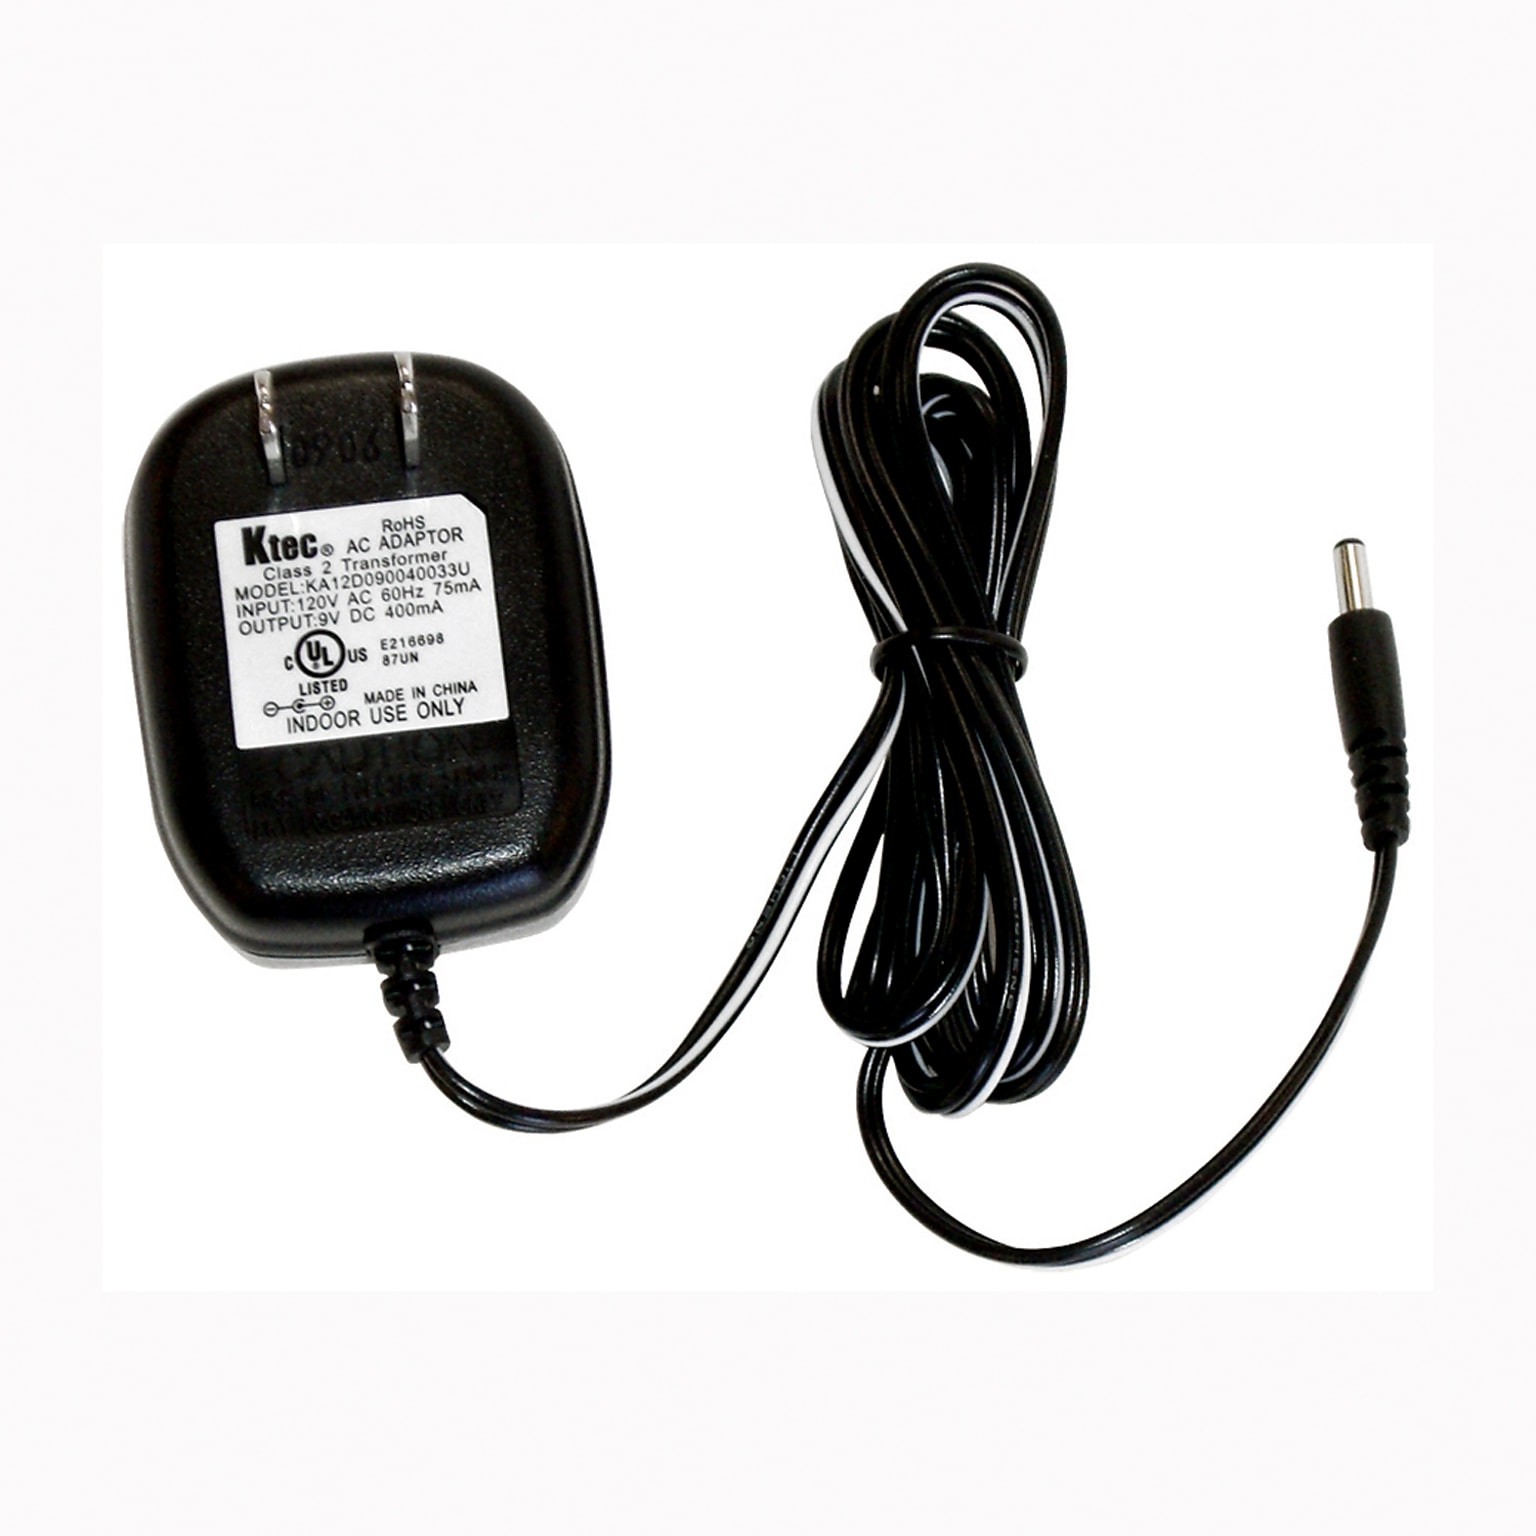 Kagan Power Adapter for Megatimer, 59 , 2 Outlets, 3/st, Black (KA-JMTA)